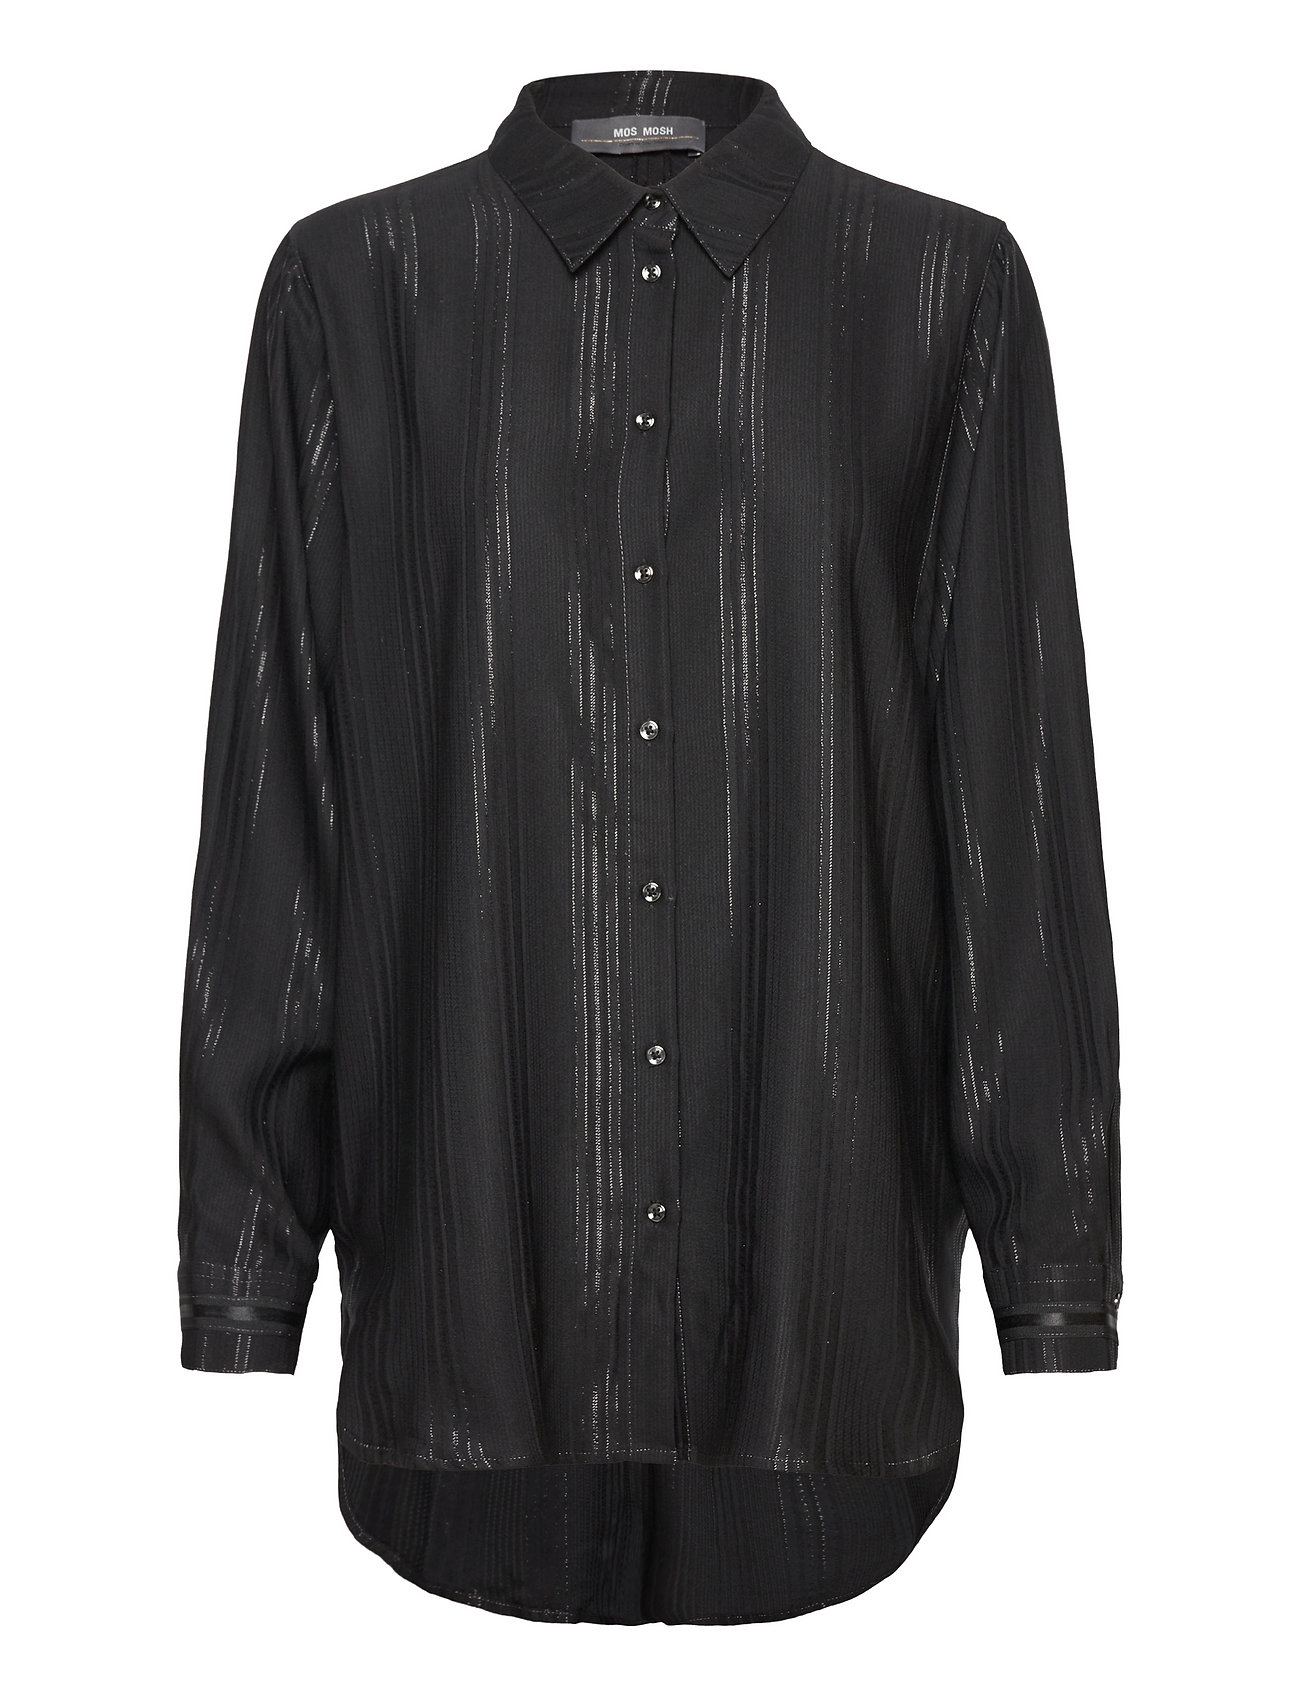 MOS MOSH Enola Shine Stripe Shirt - Long-sleeved | Boozt.com